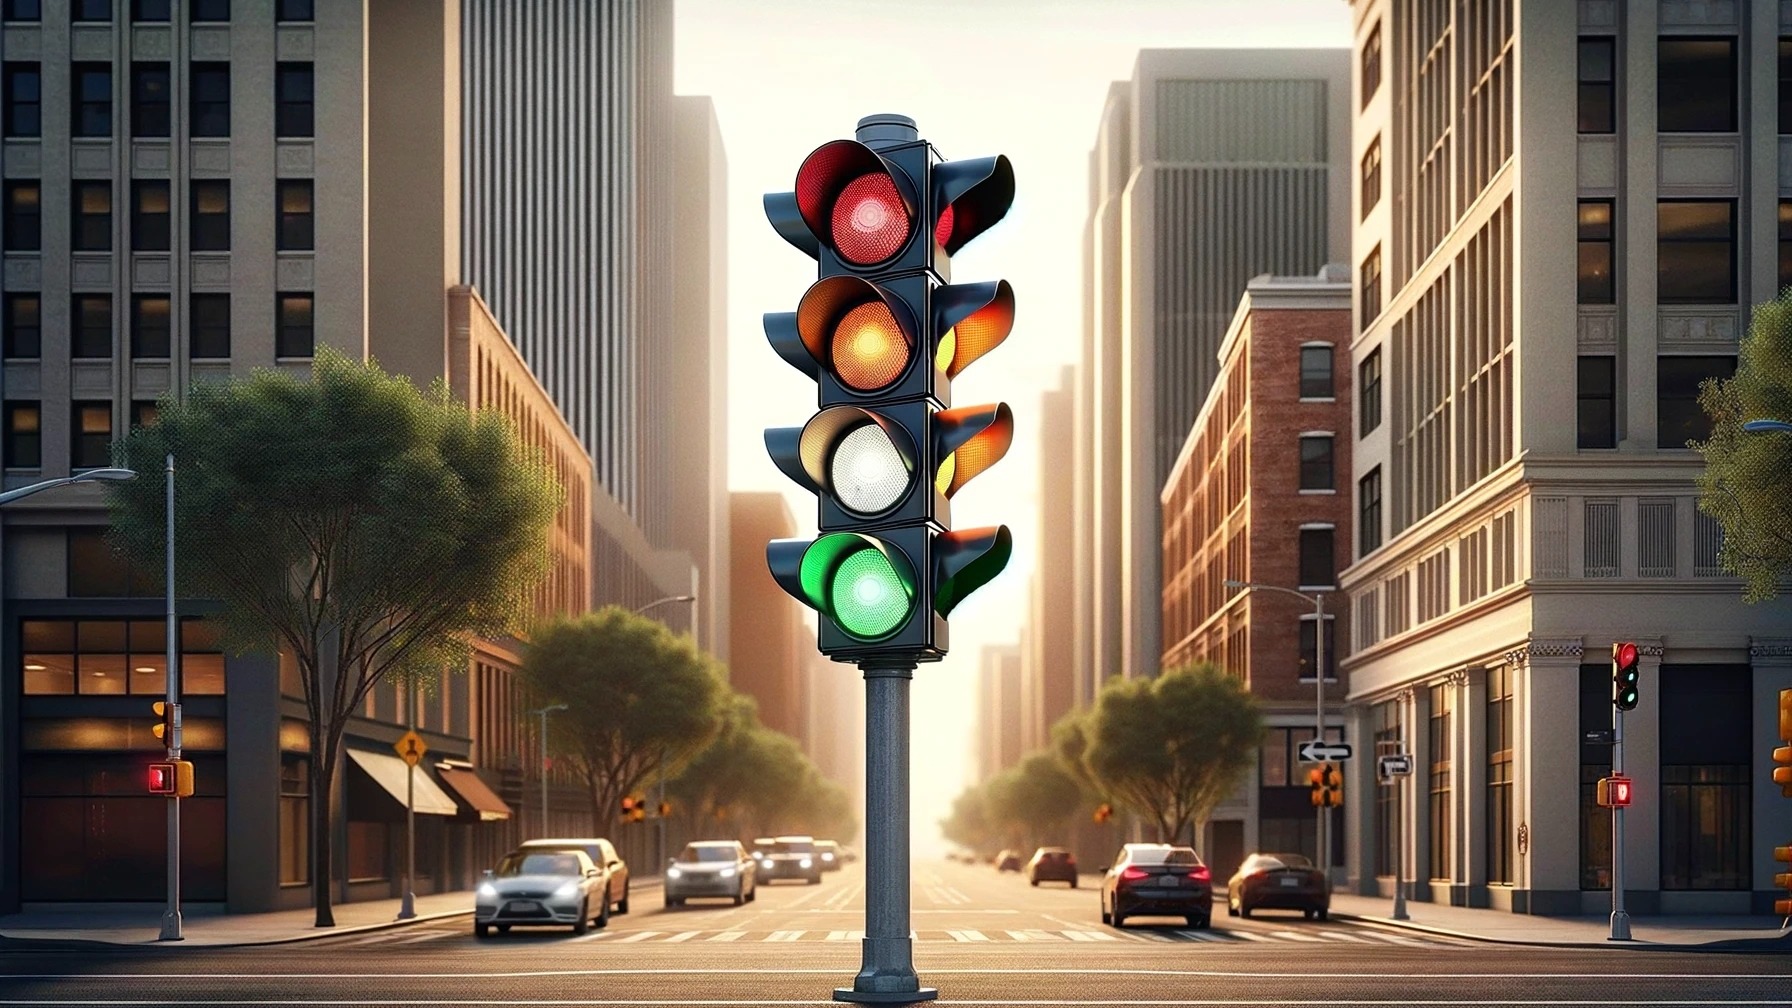 Semafoarele ar putea avea 4 culori în următorii ani datorită introducerii în trafic a mașinilor autonome: verde, roșu, portocaliu și alb